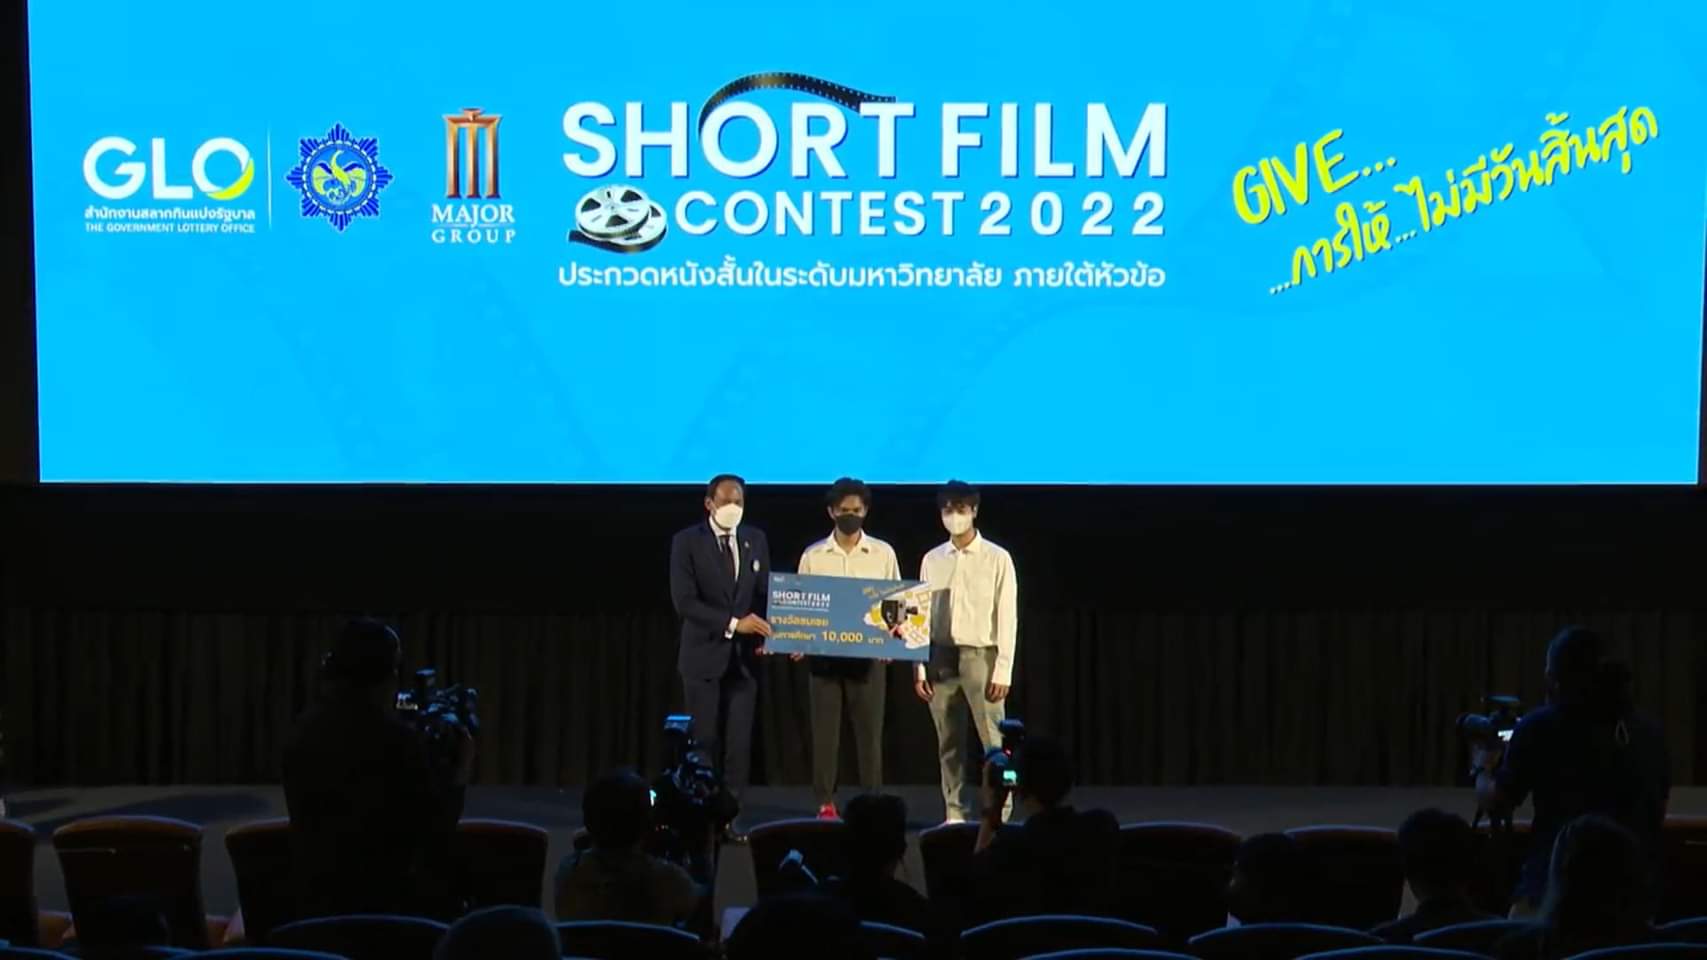 นักศึกษาแมสคอม มช. “ทีม เทพเจ้ากิม” คว้ารางวัลชมเชยการประกวดหนังสั้น “GLO Short Film Contest 2022”